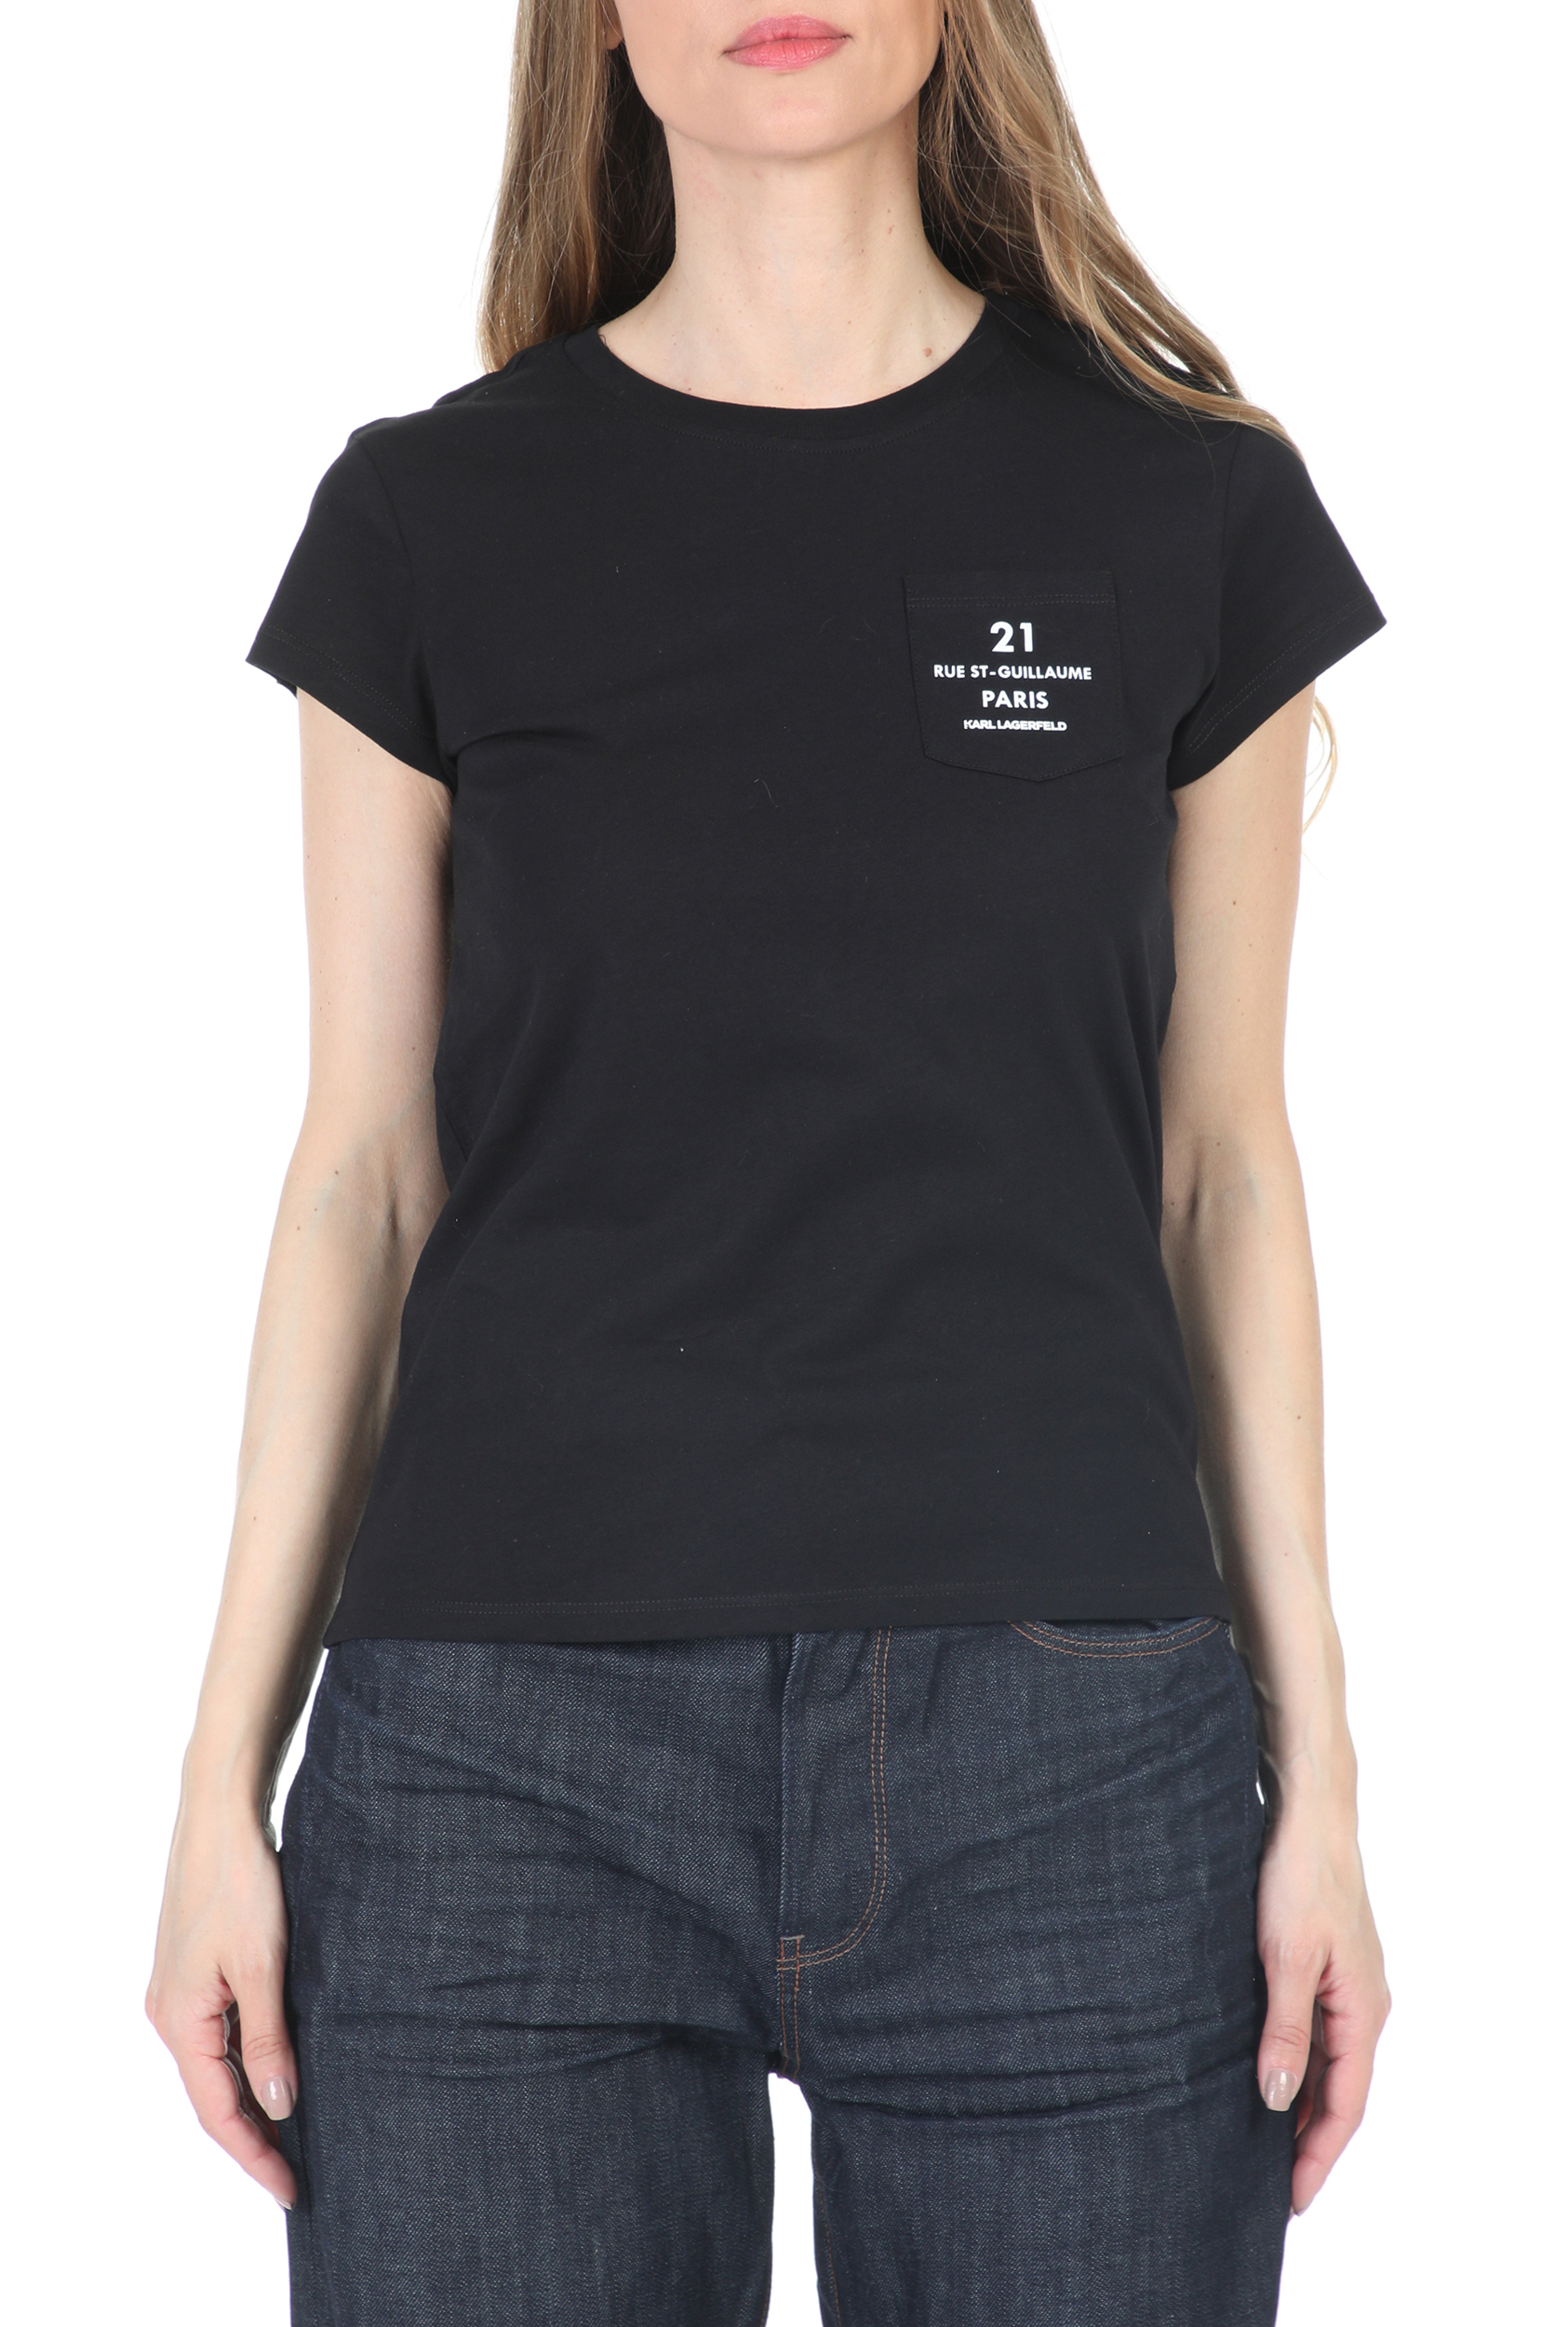 Γυναικεία/Ρούχα/Μπλούζες/Κοντομάνικες KARL LAGERFELD - Γυναικείο t-shirt KARL LAGERFELD Address Logo Pocket μαύρο